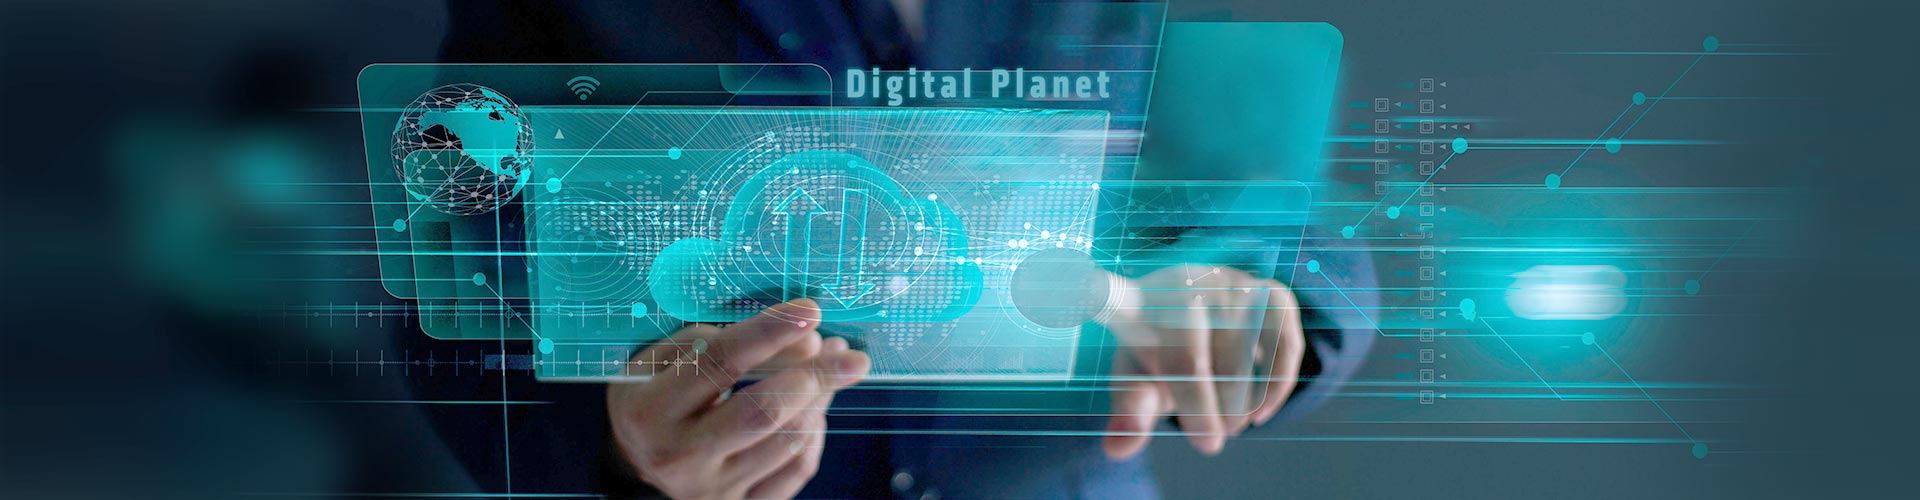 Digital Planet ile Adım Adım e-Dönüşüm’e Nasıl Geçilir?